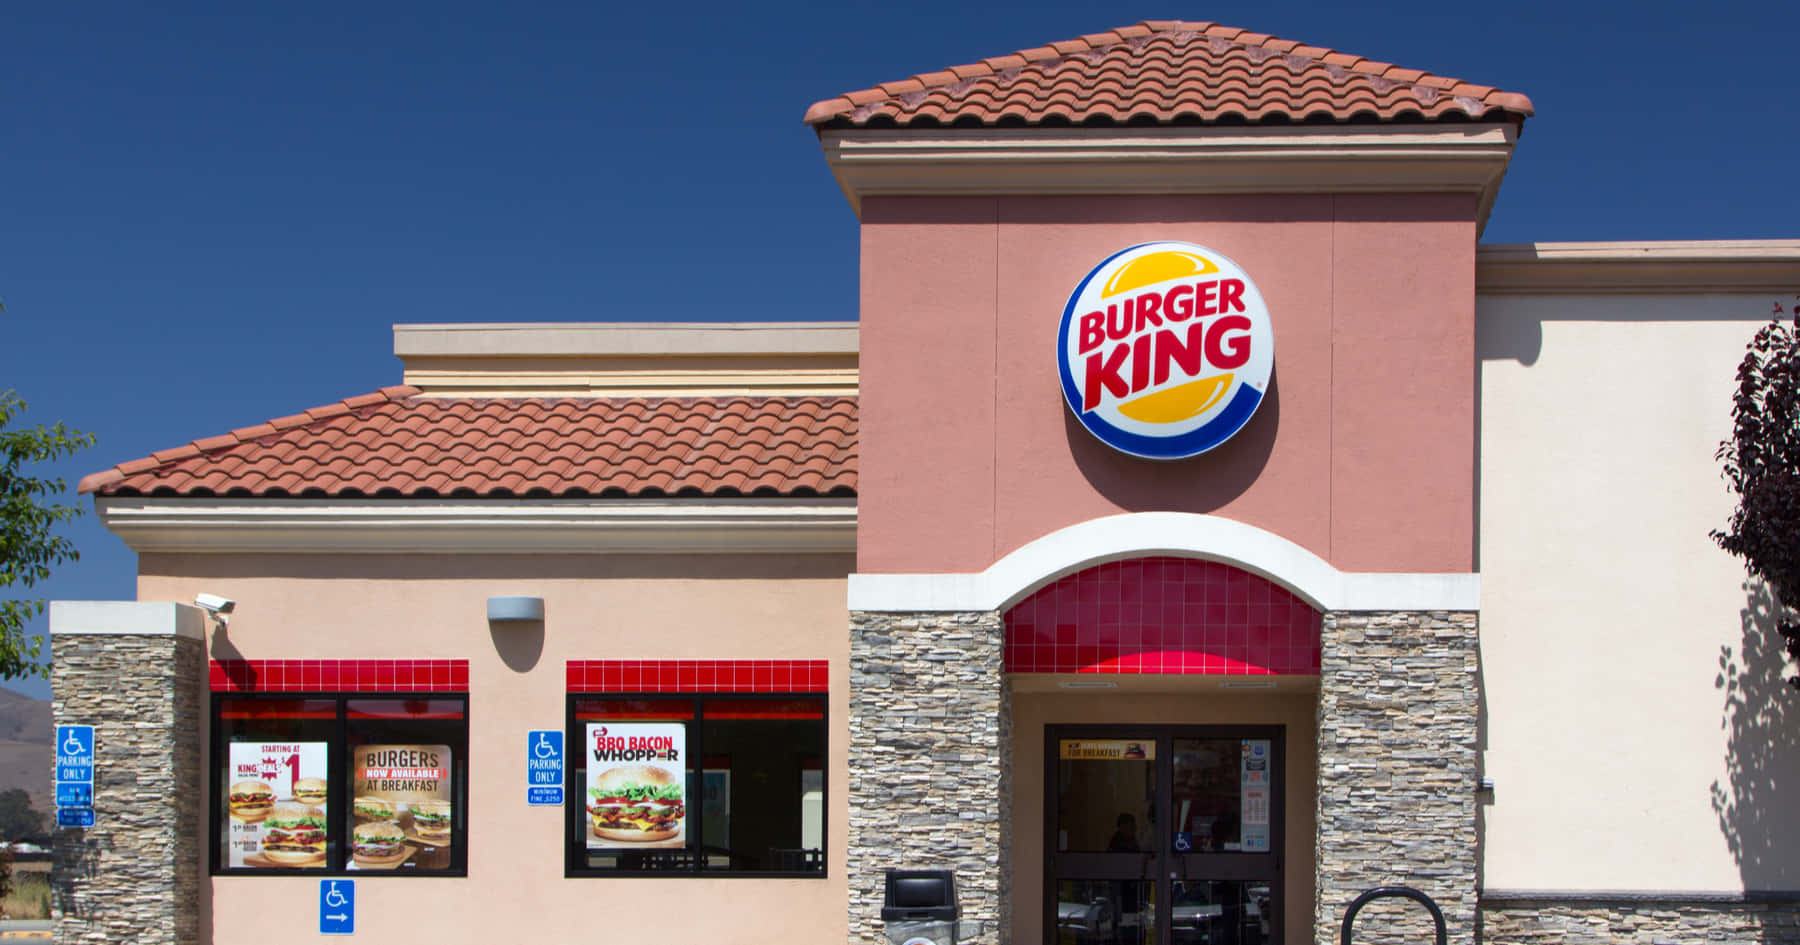 Deliciousaburgaregjorda Med De Färskaste Ingredienserna Väntar På Burger King!